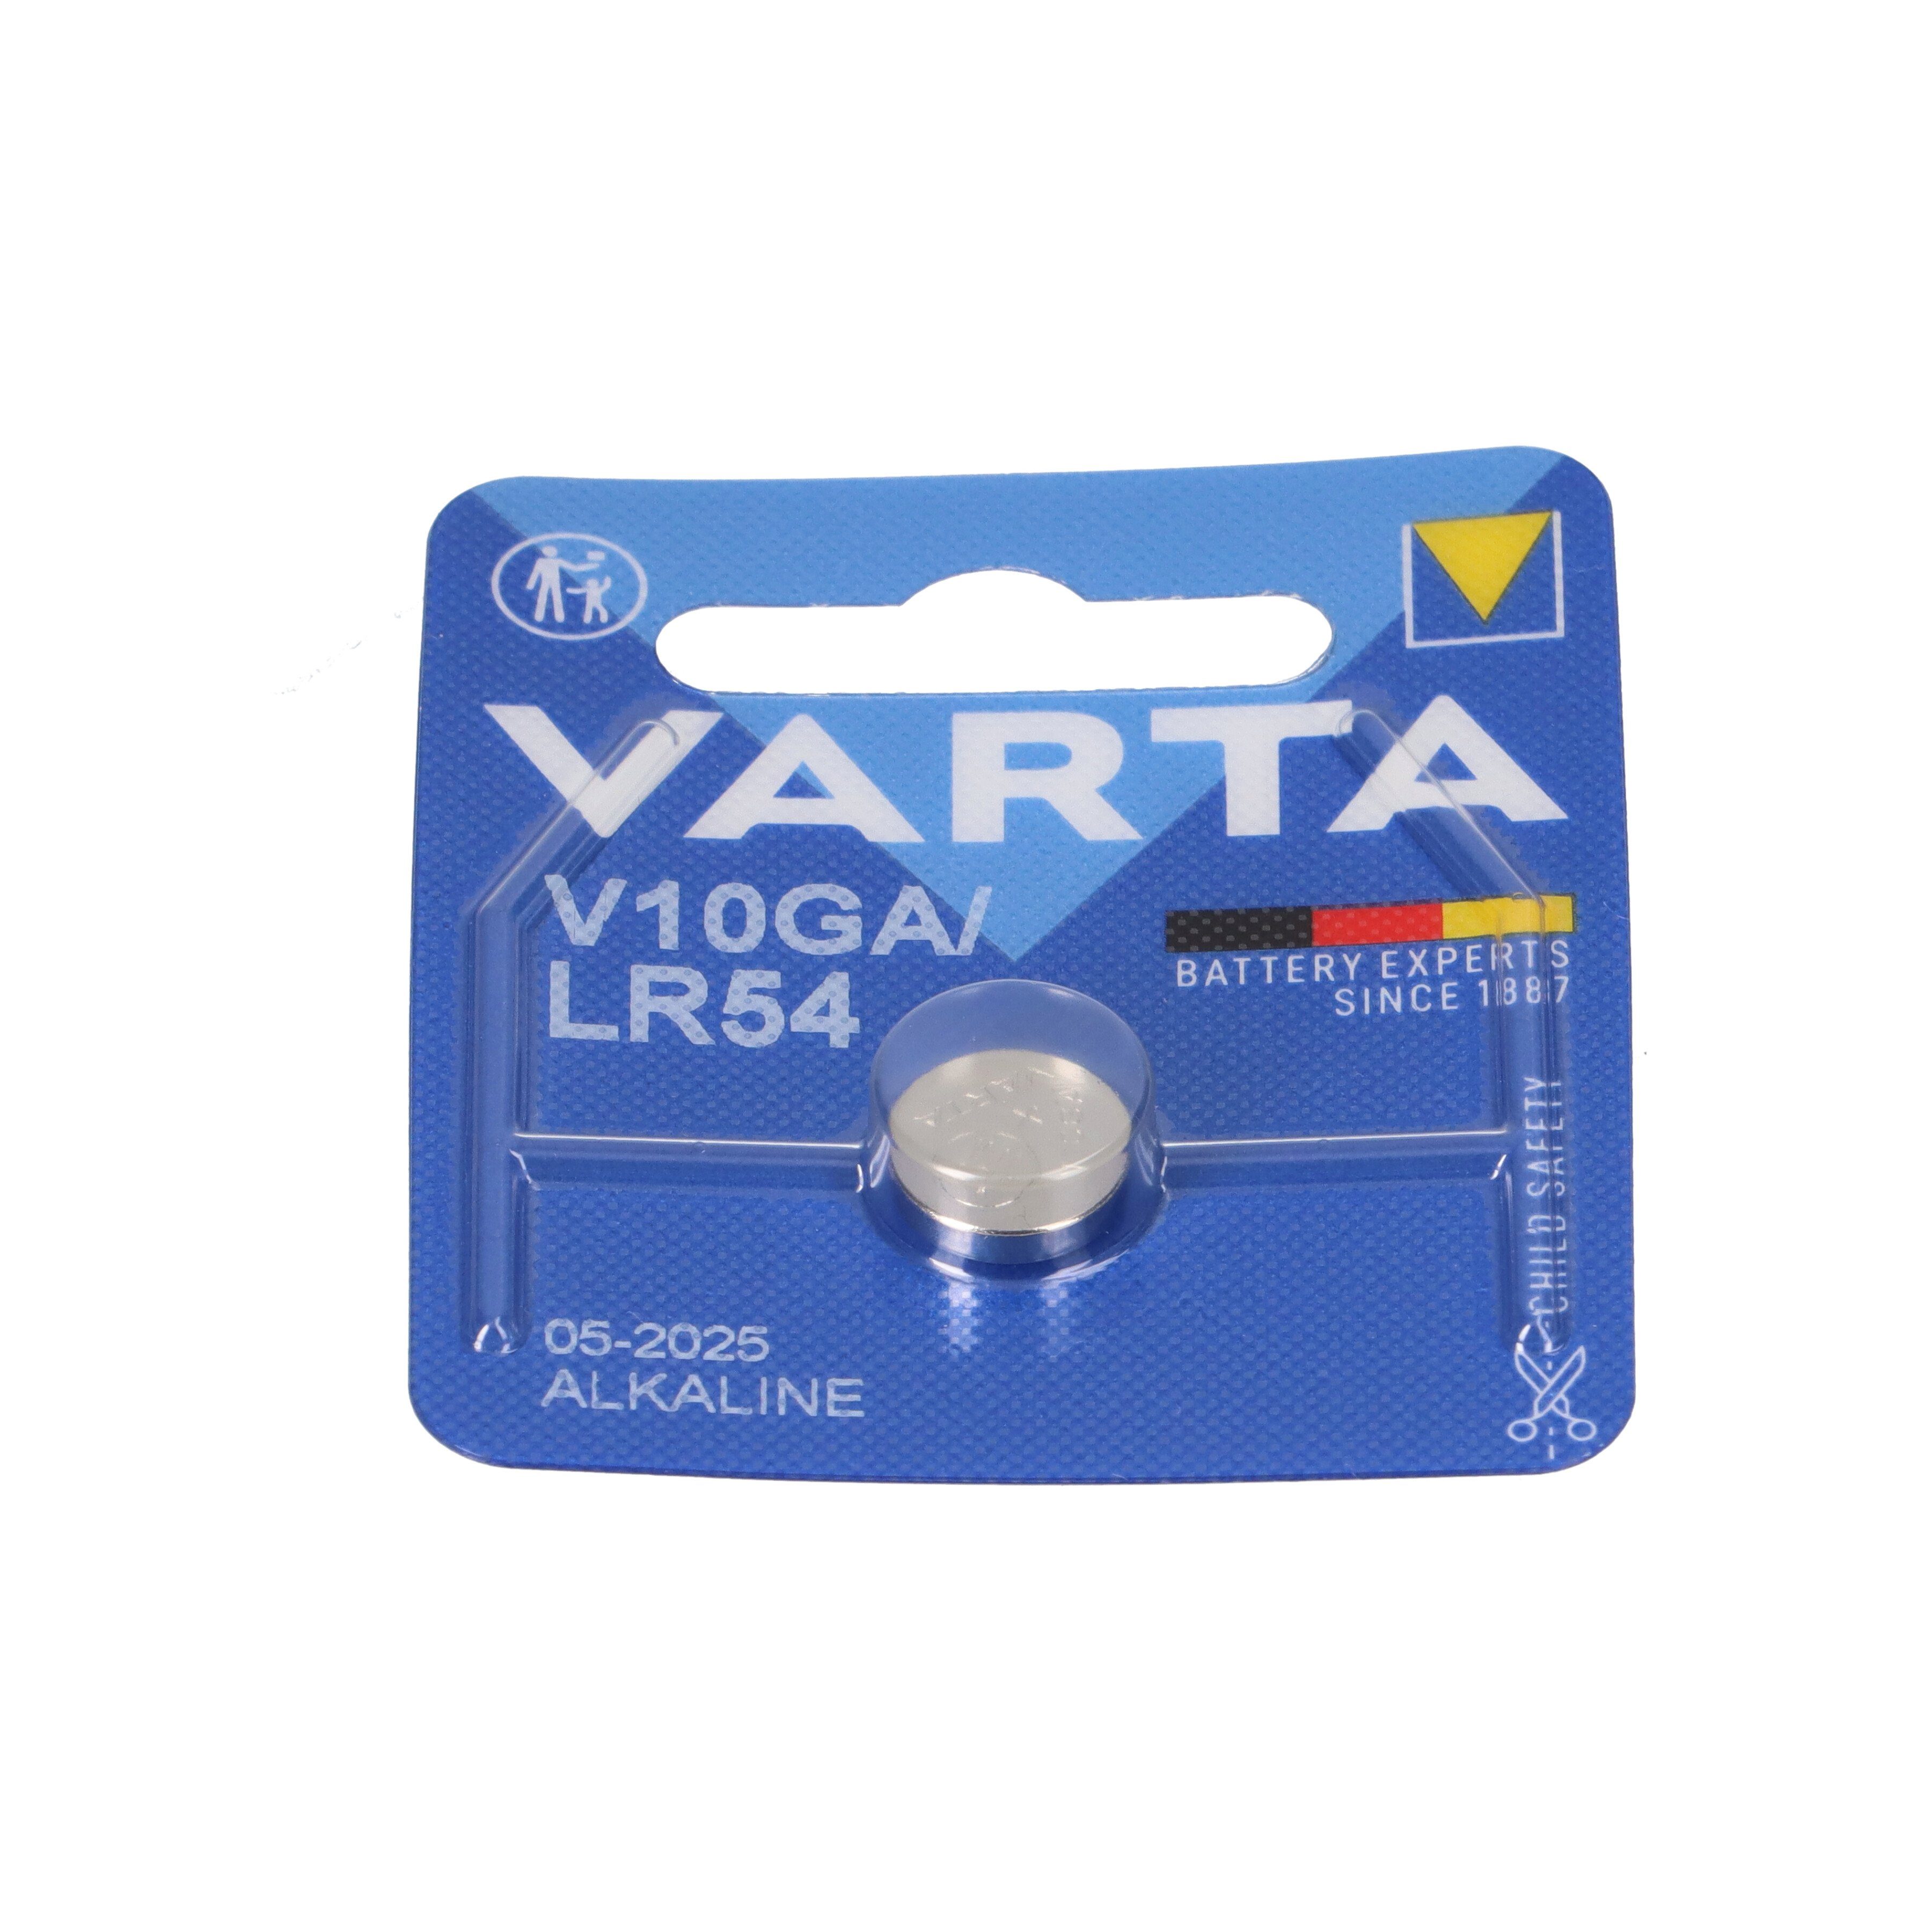 VARTA 10x Varta Knopfzelle Blister 1er Electronics 10 1,5 Knopfzelle Alkaline V GA V